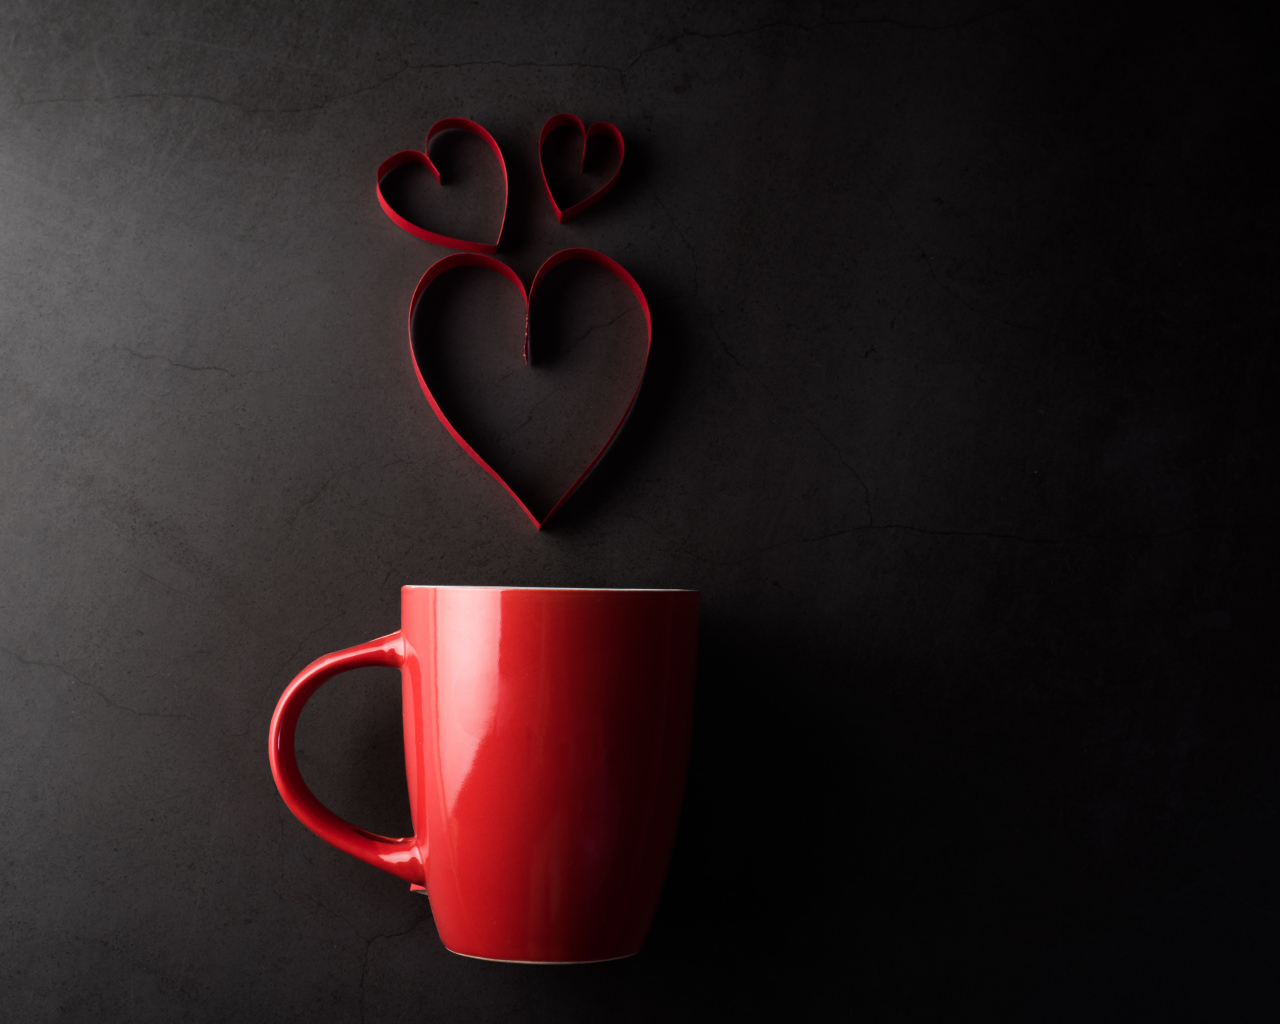 Красная чашка на сером фоне с сердечками